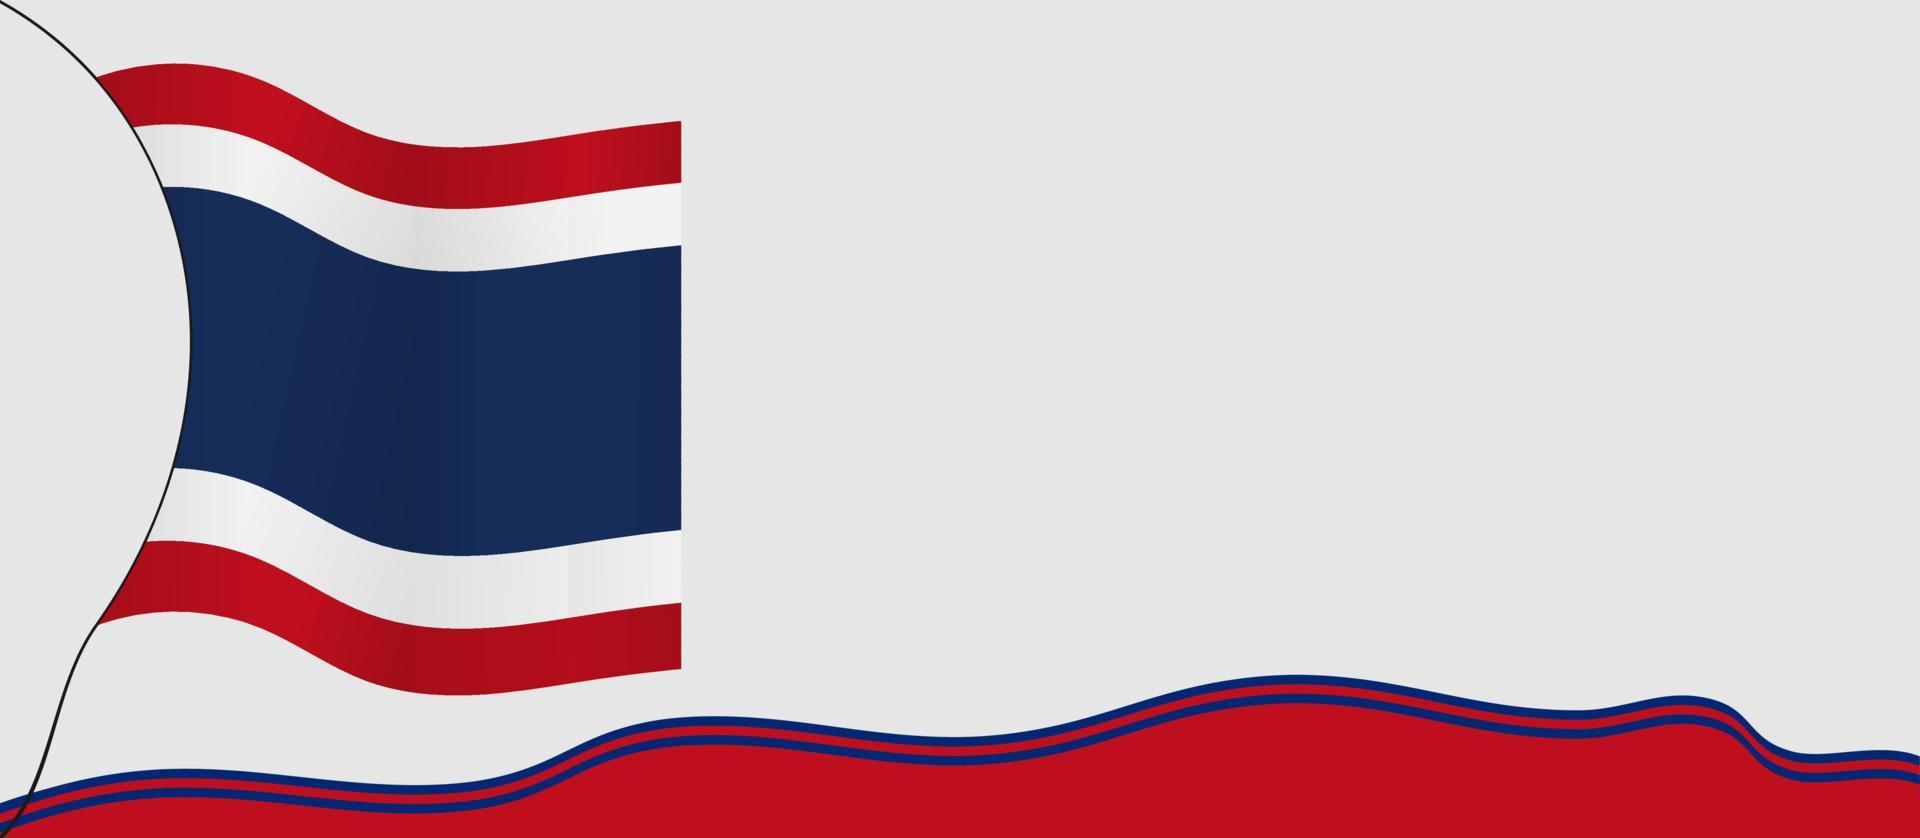 thailand konstitution dag bakgrund vektor illustration och kopiera utrymme område. lämplig att placeras på innehåll med det temat. thailands flagga